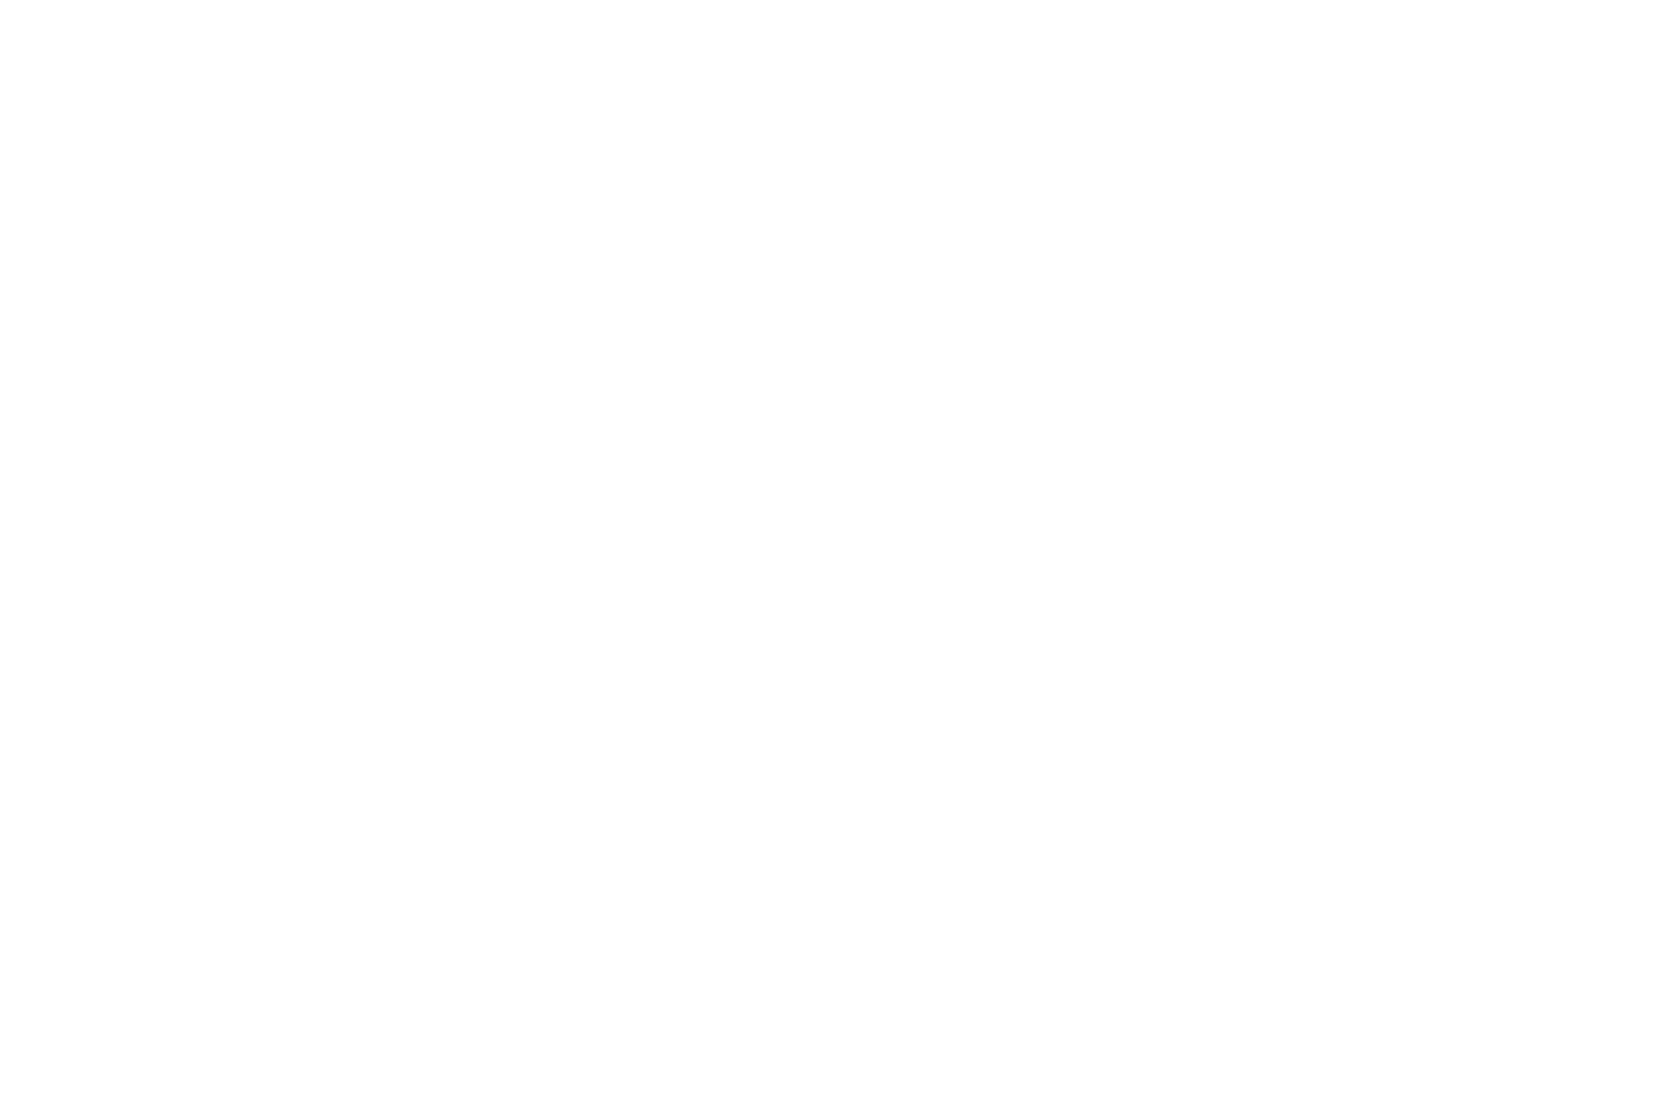 Пример логотипа, разработанного для приложения для обмена сообщениями в локальной сети для портфолио веб дизайнера